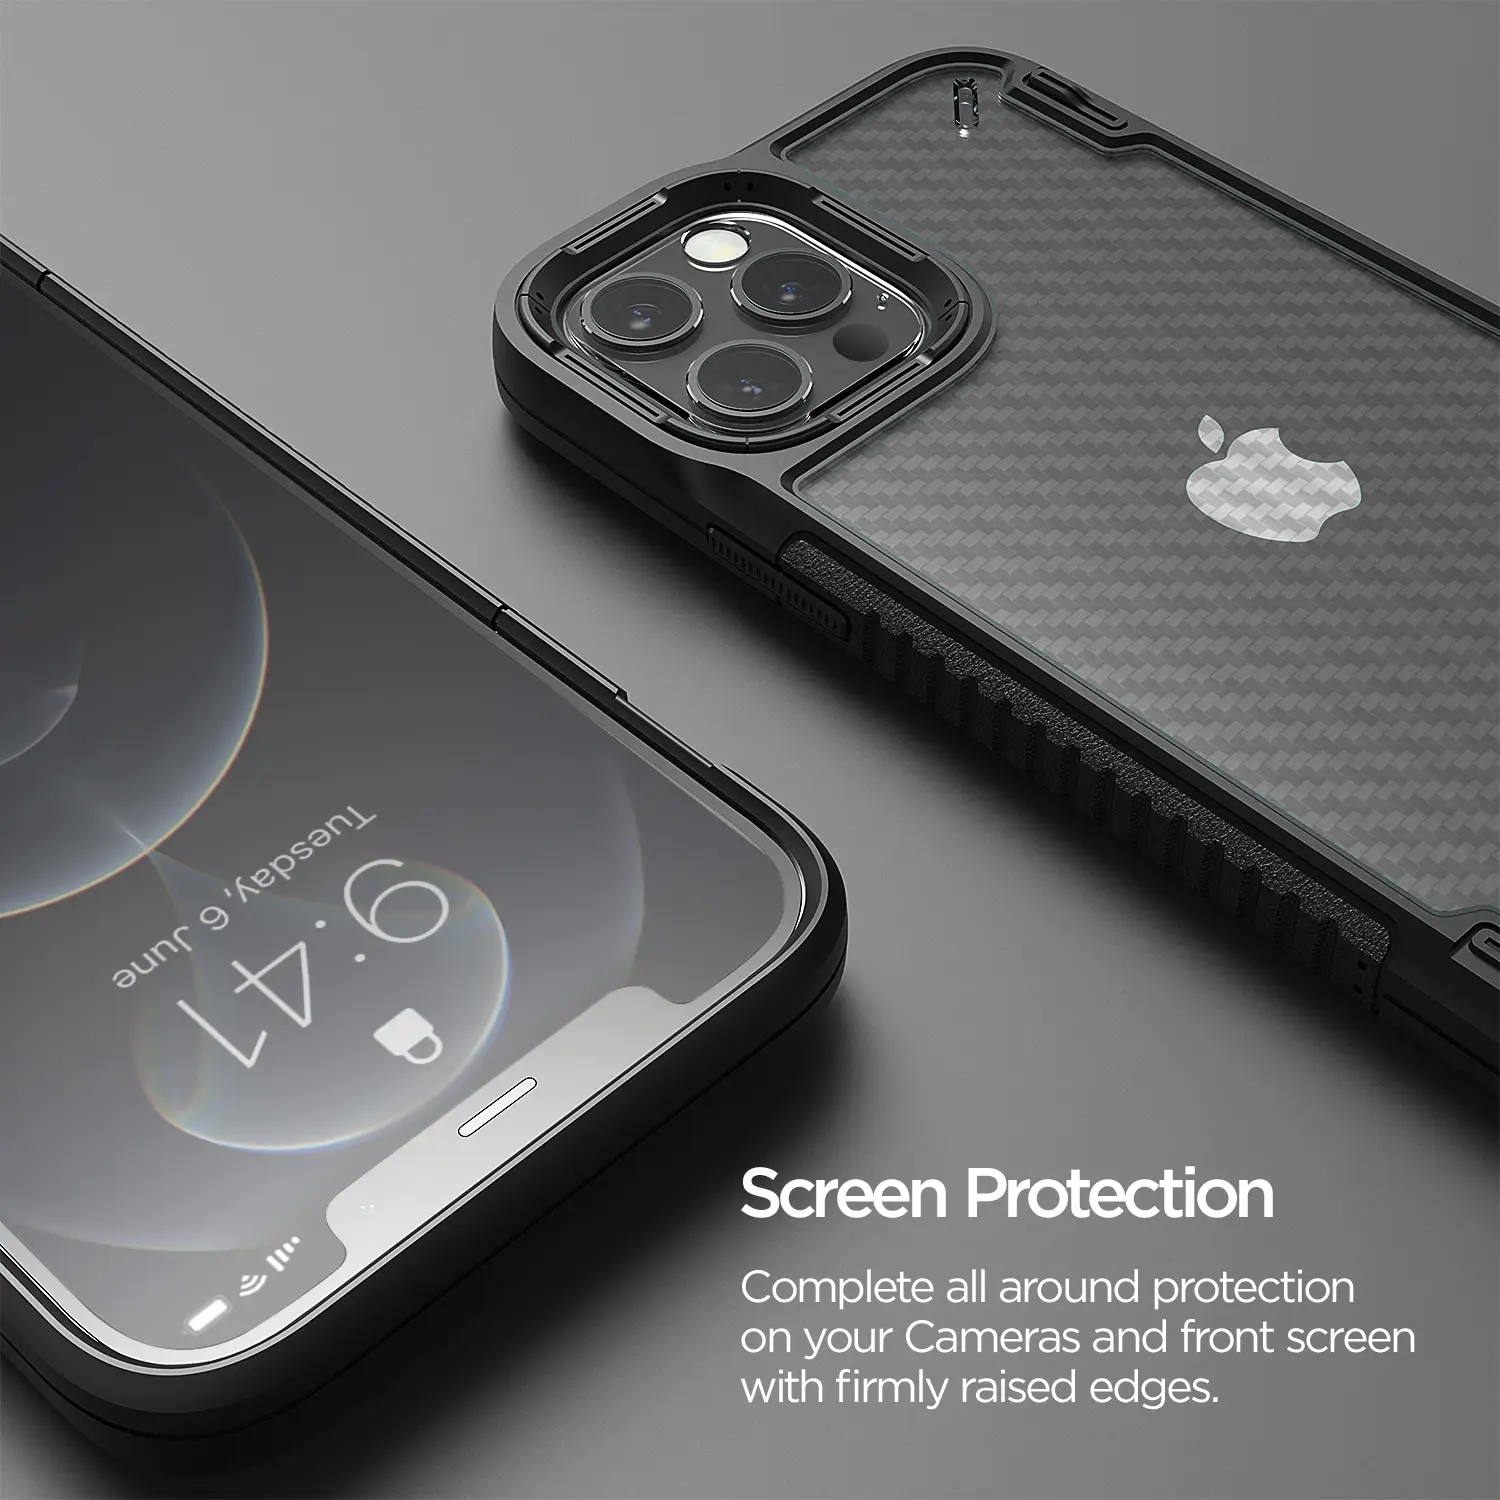 เคส VRS รุ่น Crystal Mixx Pro - iPhone 12 Pro Max - สีดำ คาร์บอน